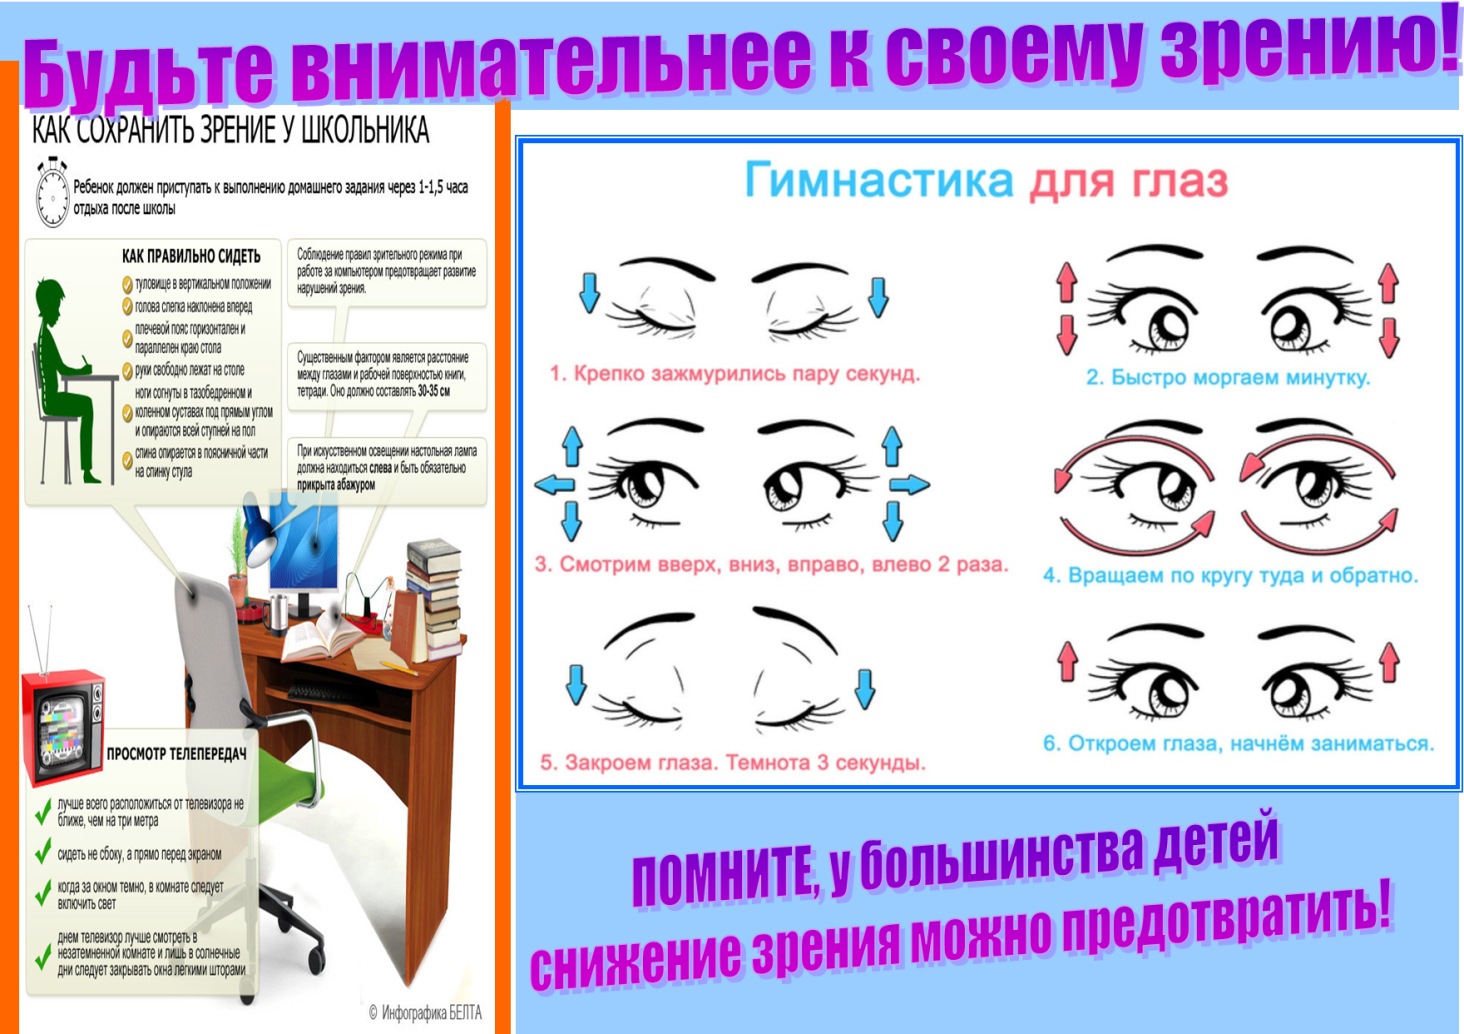 Охрана здоровья зрения. Способы сохранения зрения. Памятка для глаз. Профилактика сохранения зрения. Буклет упражнения для глаз.